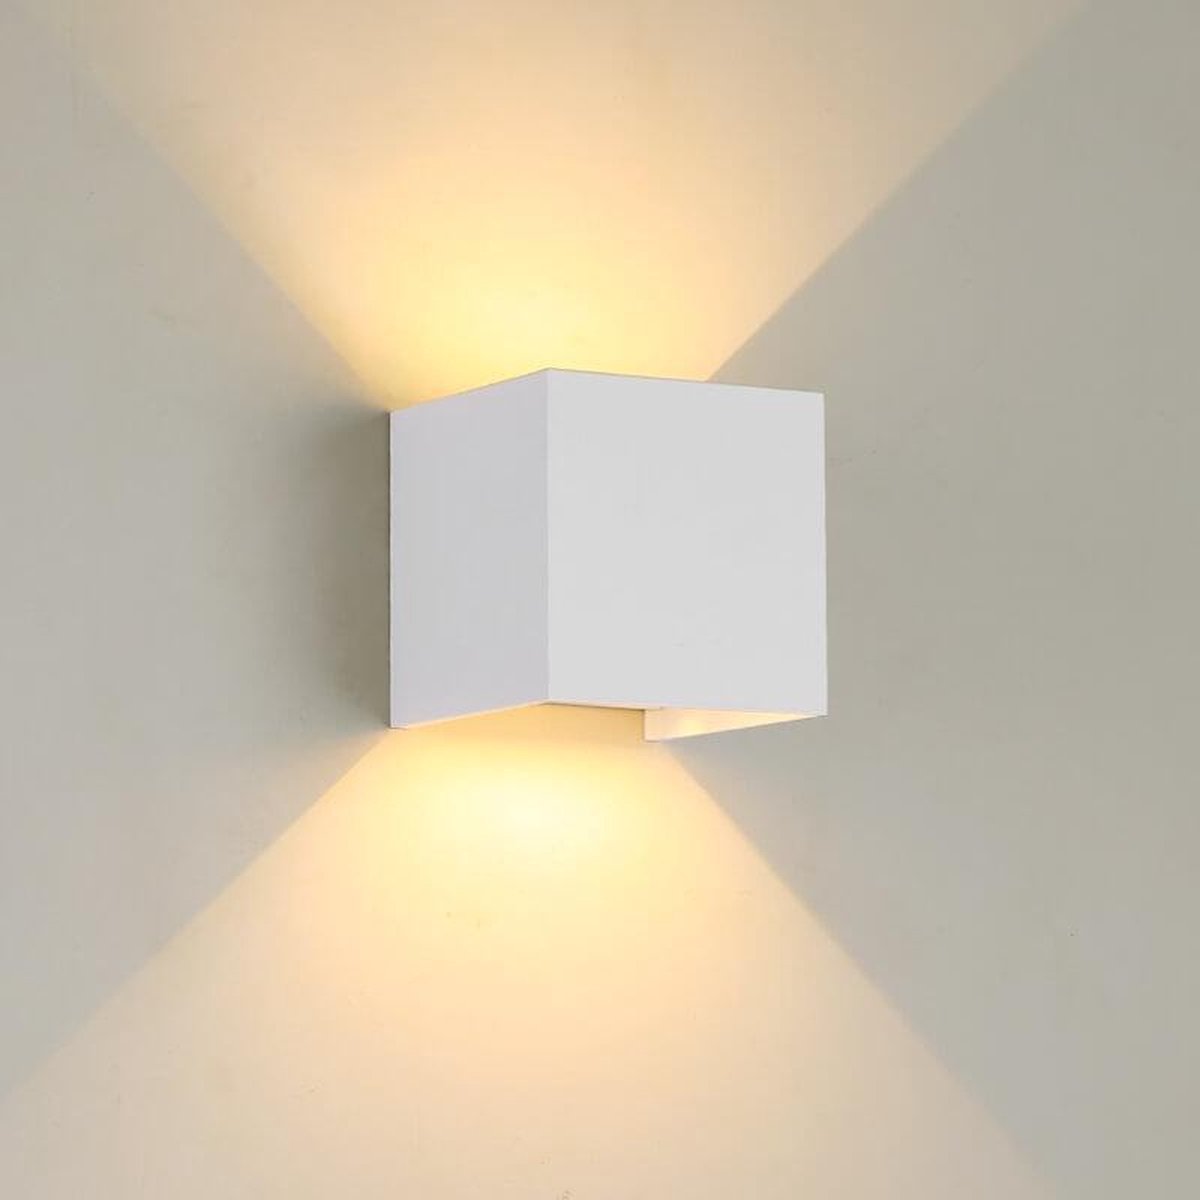 Wandlamp kubus wit LED Design - Up-downlight - 2700K - Dimbaar - Industrieel Modern Kubus - Geschikt voor Binnen- en Buitenverlichting